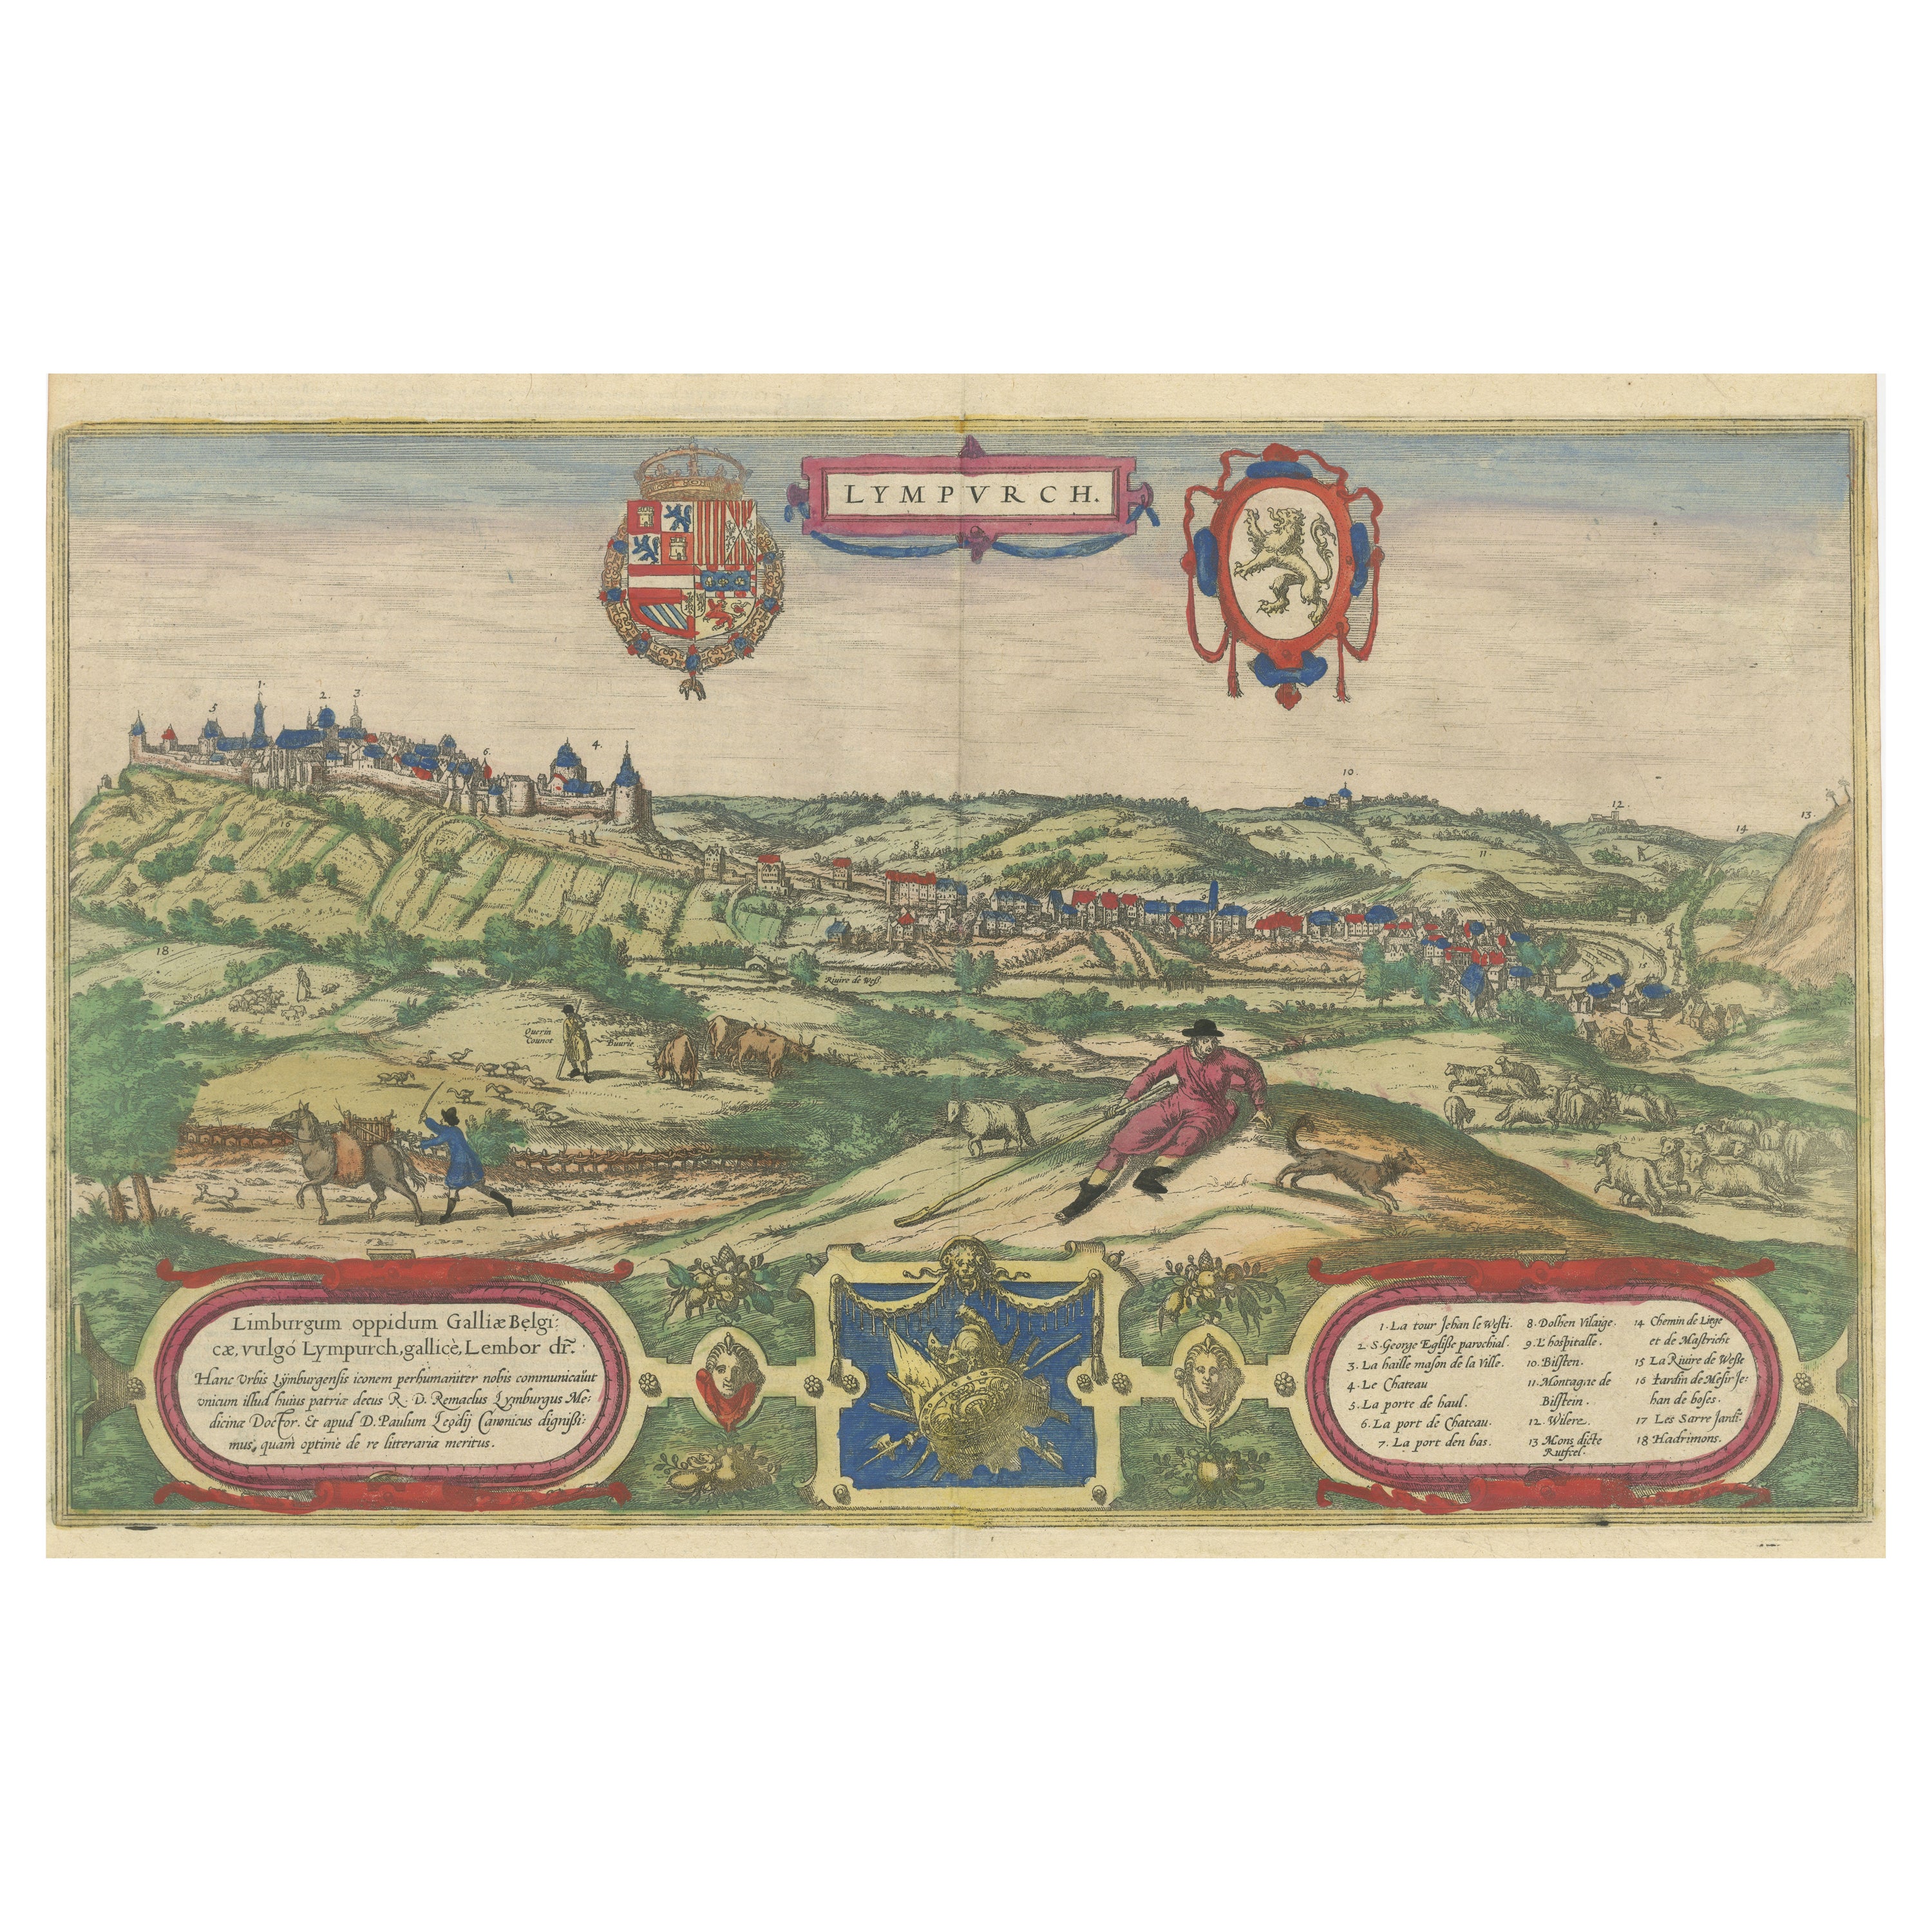 Original Antique Print of Limbourg in present day Belgium, Published circa 1580